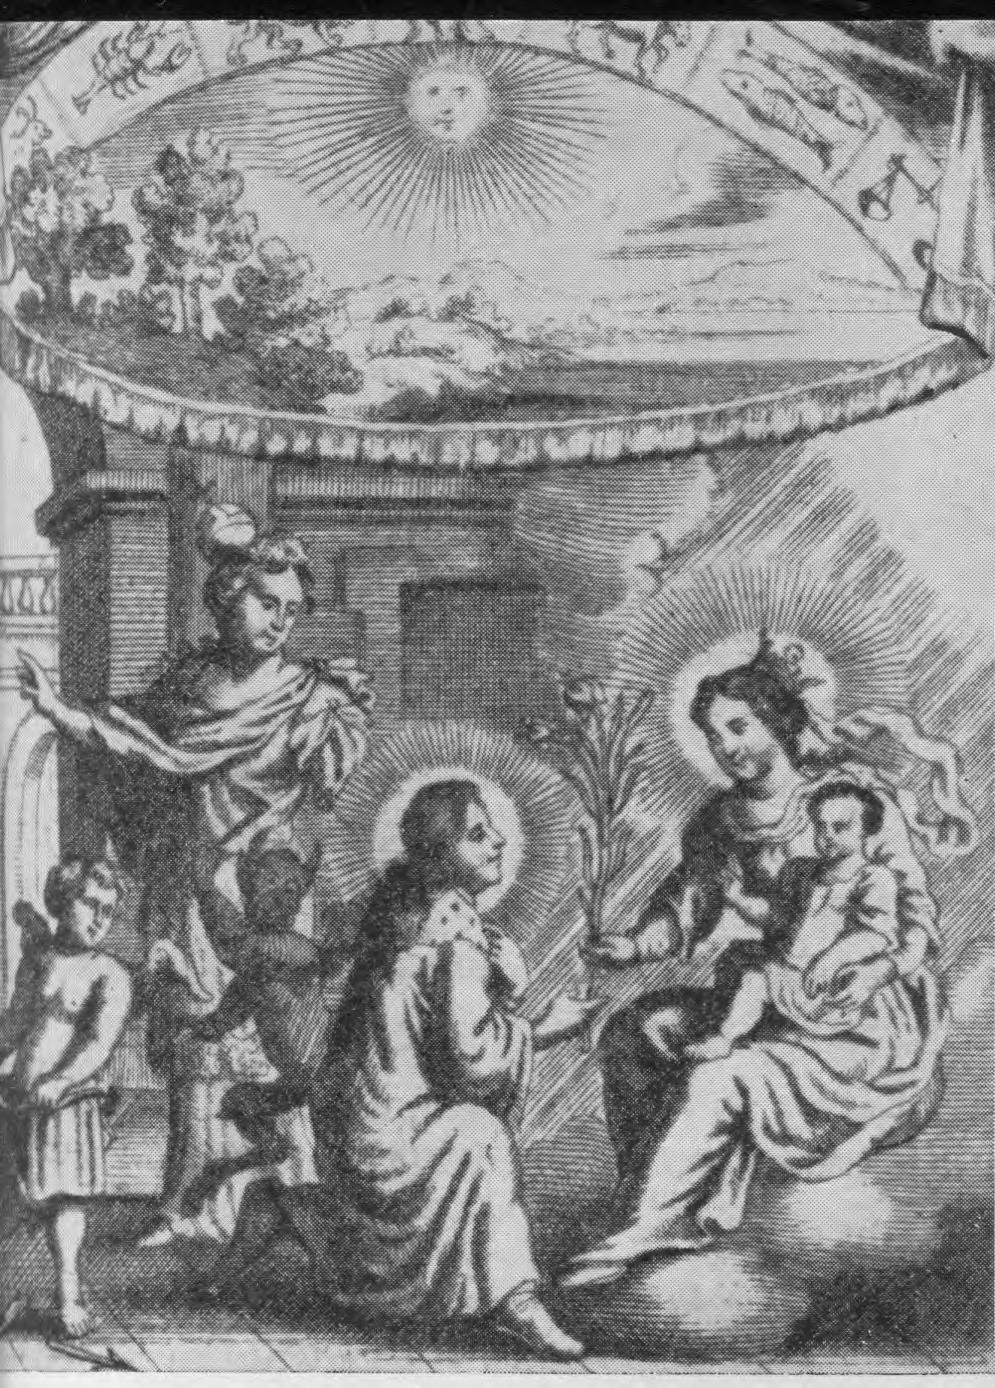 Šv. Kazimieras su Marijos pagalba nugali visas pagundas Šv. Kazimieras pralenkia šventumu savo brolius čiai nepripažįsta jaunamečių vedybų.